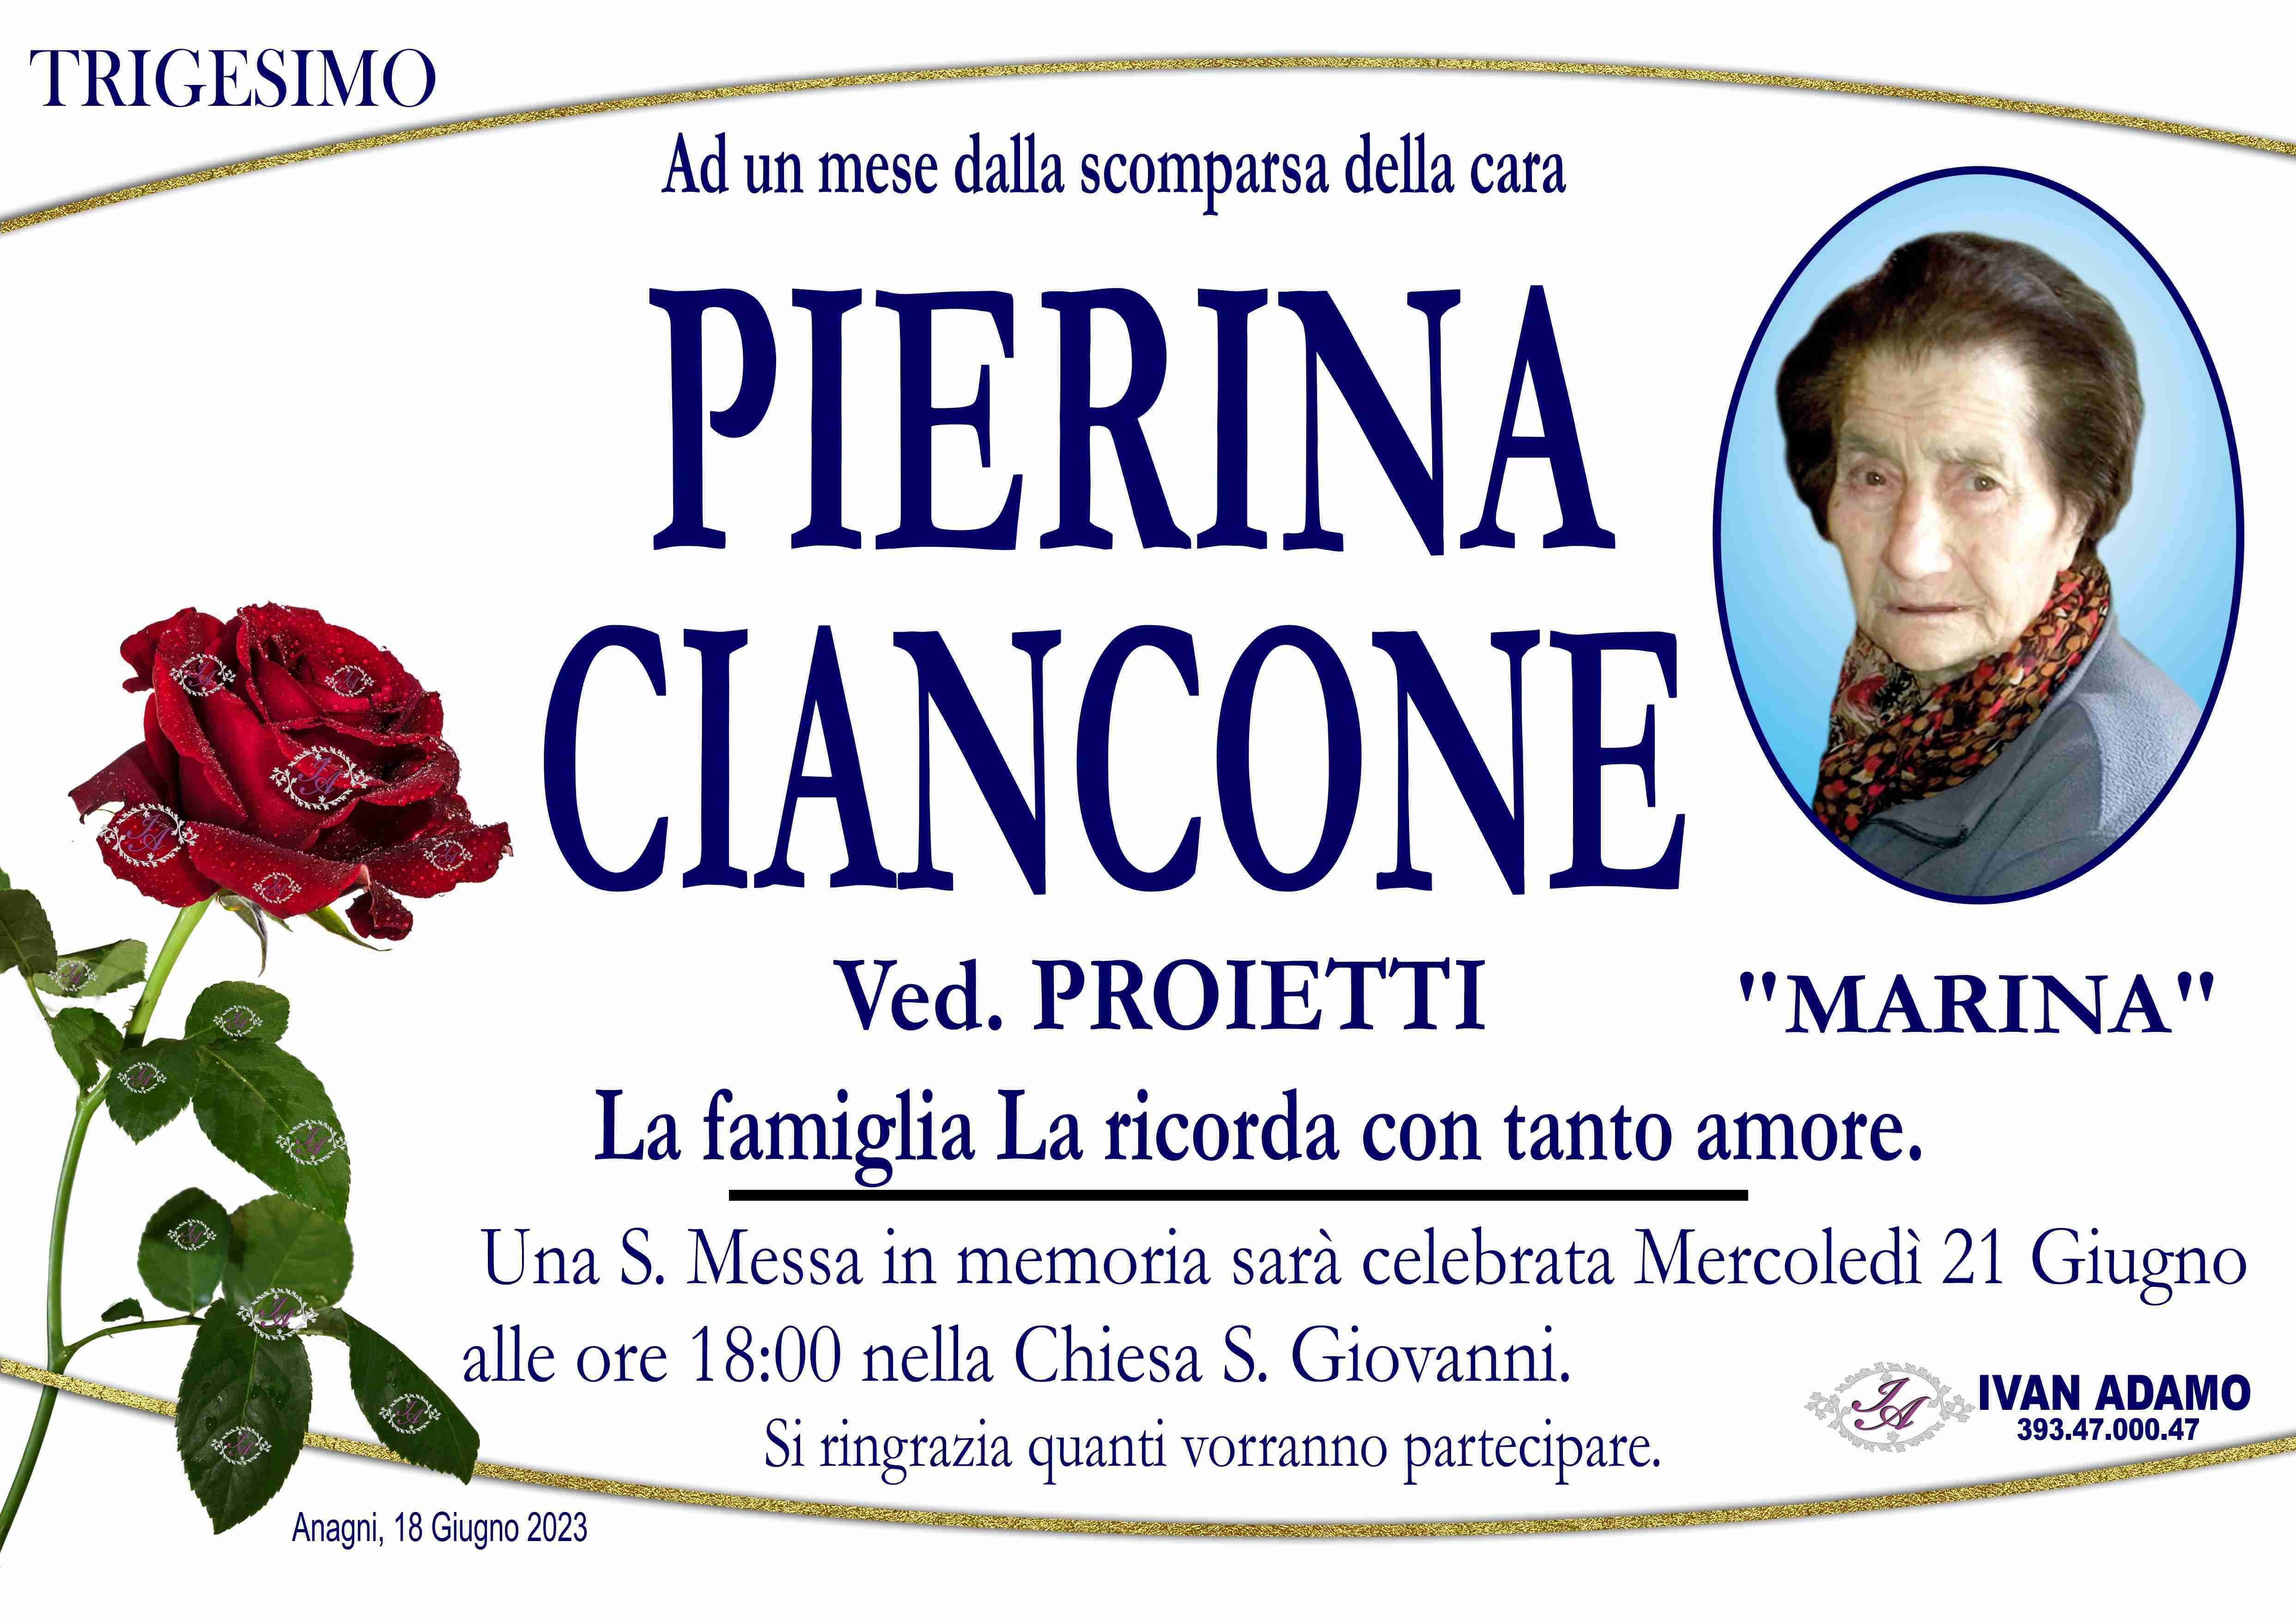 Pierina Ciancone  “Marina”